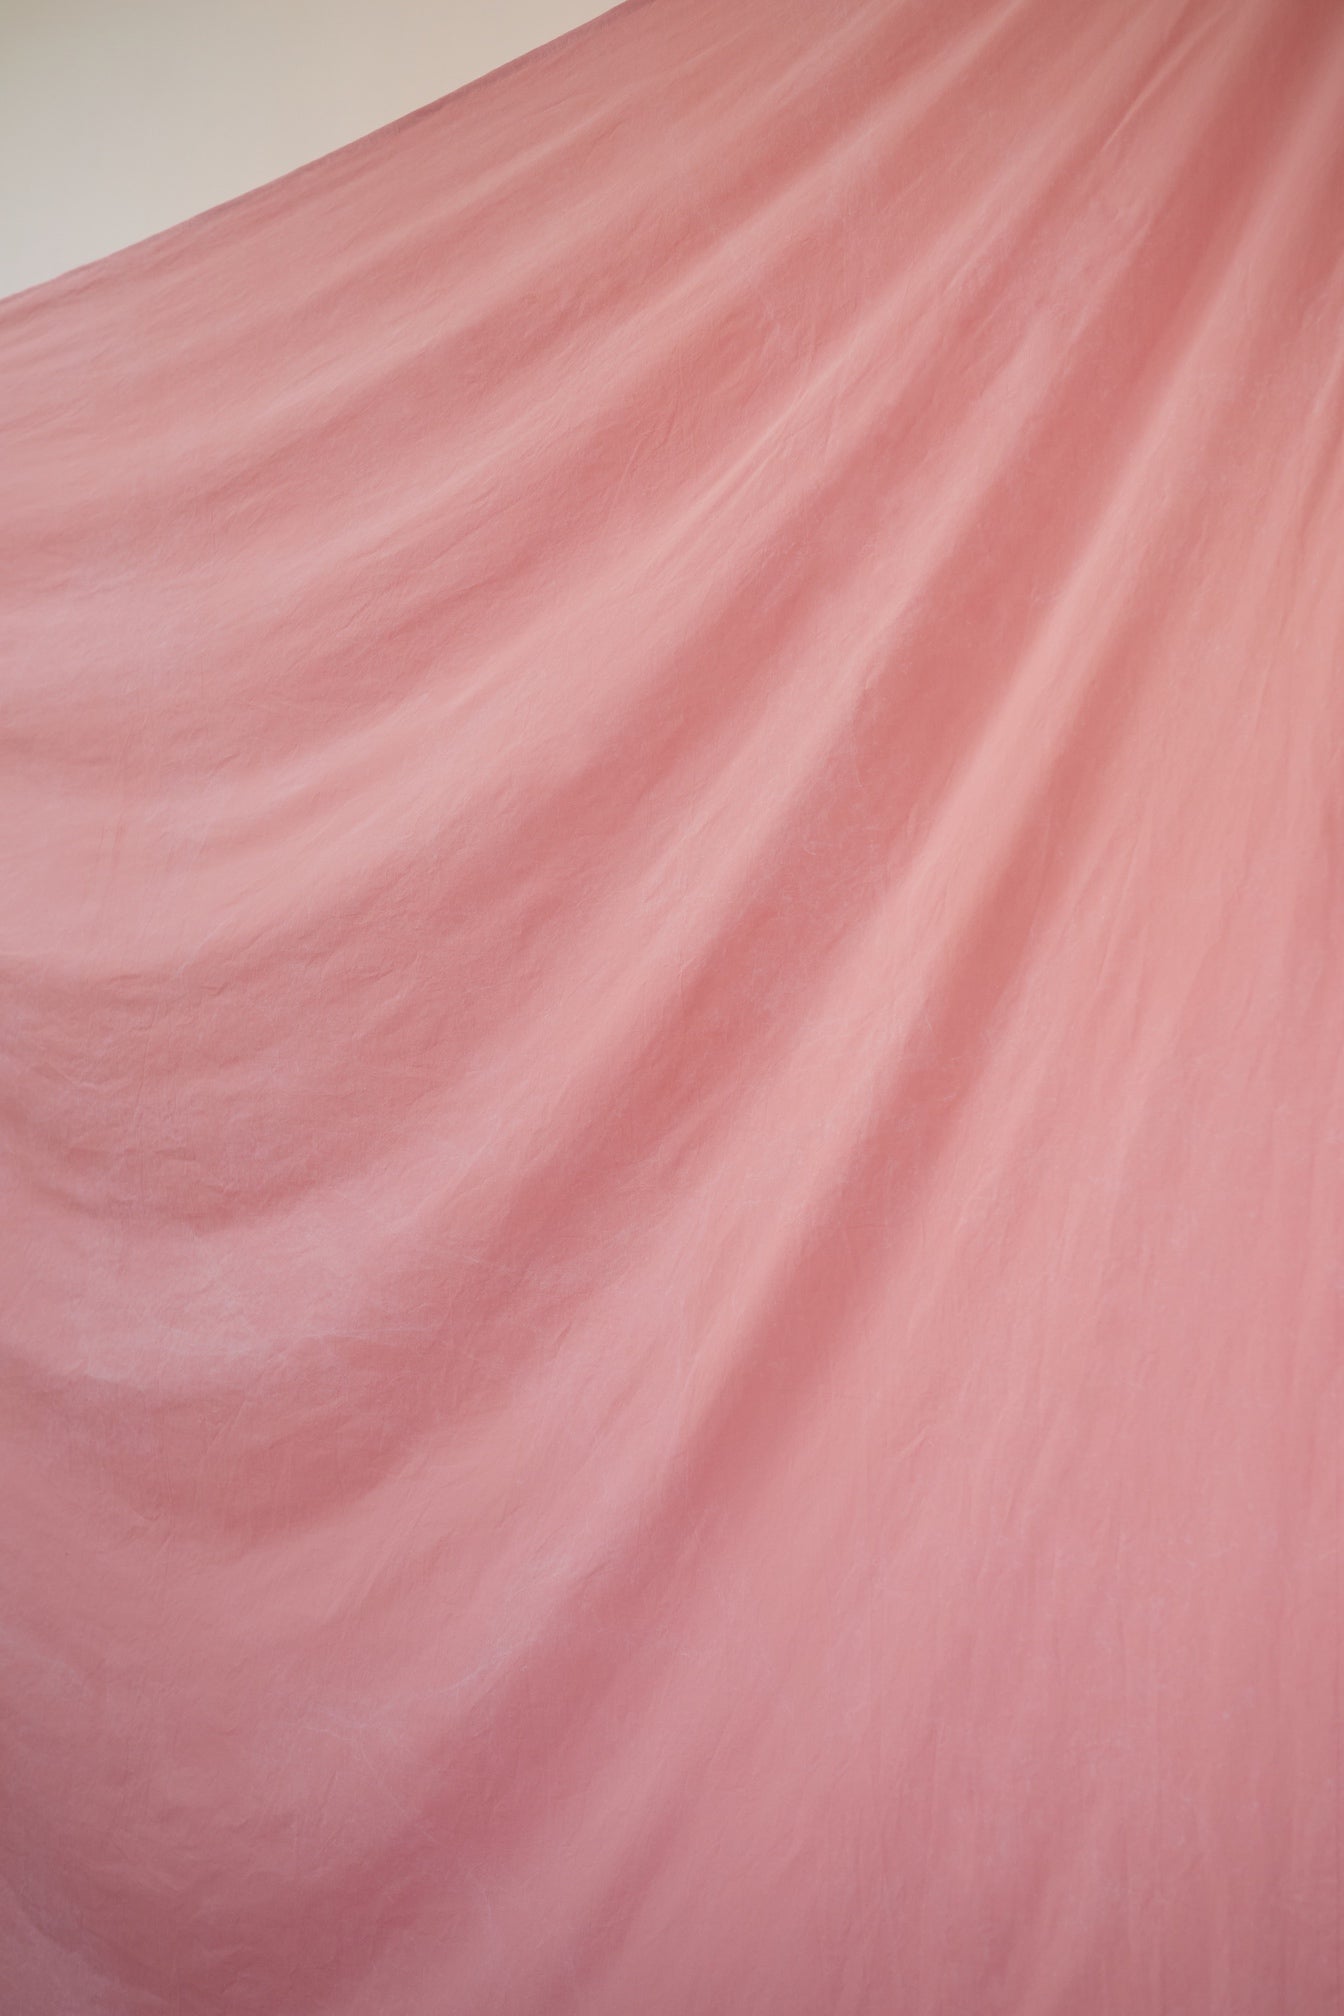 [3x5m] Cotton Backdrop Blush Pink